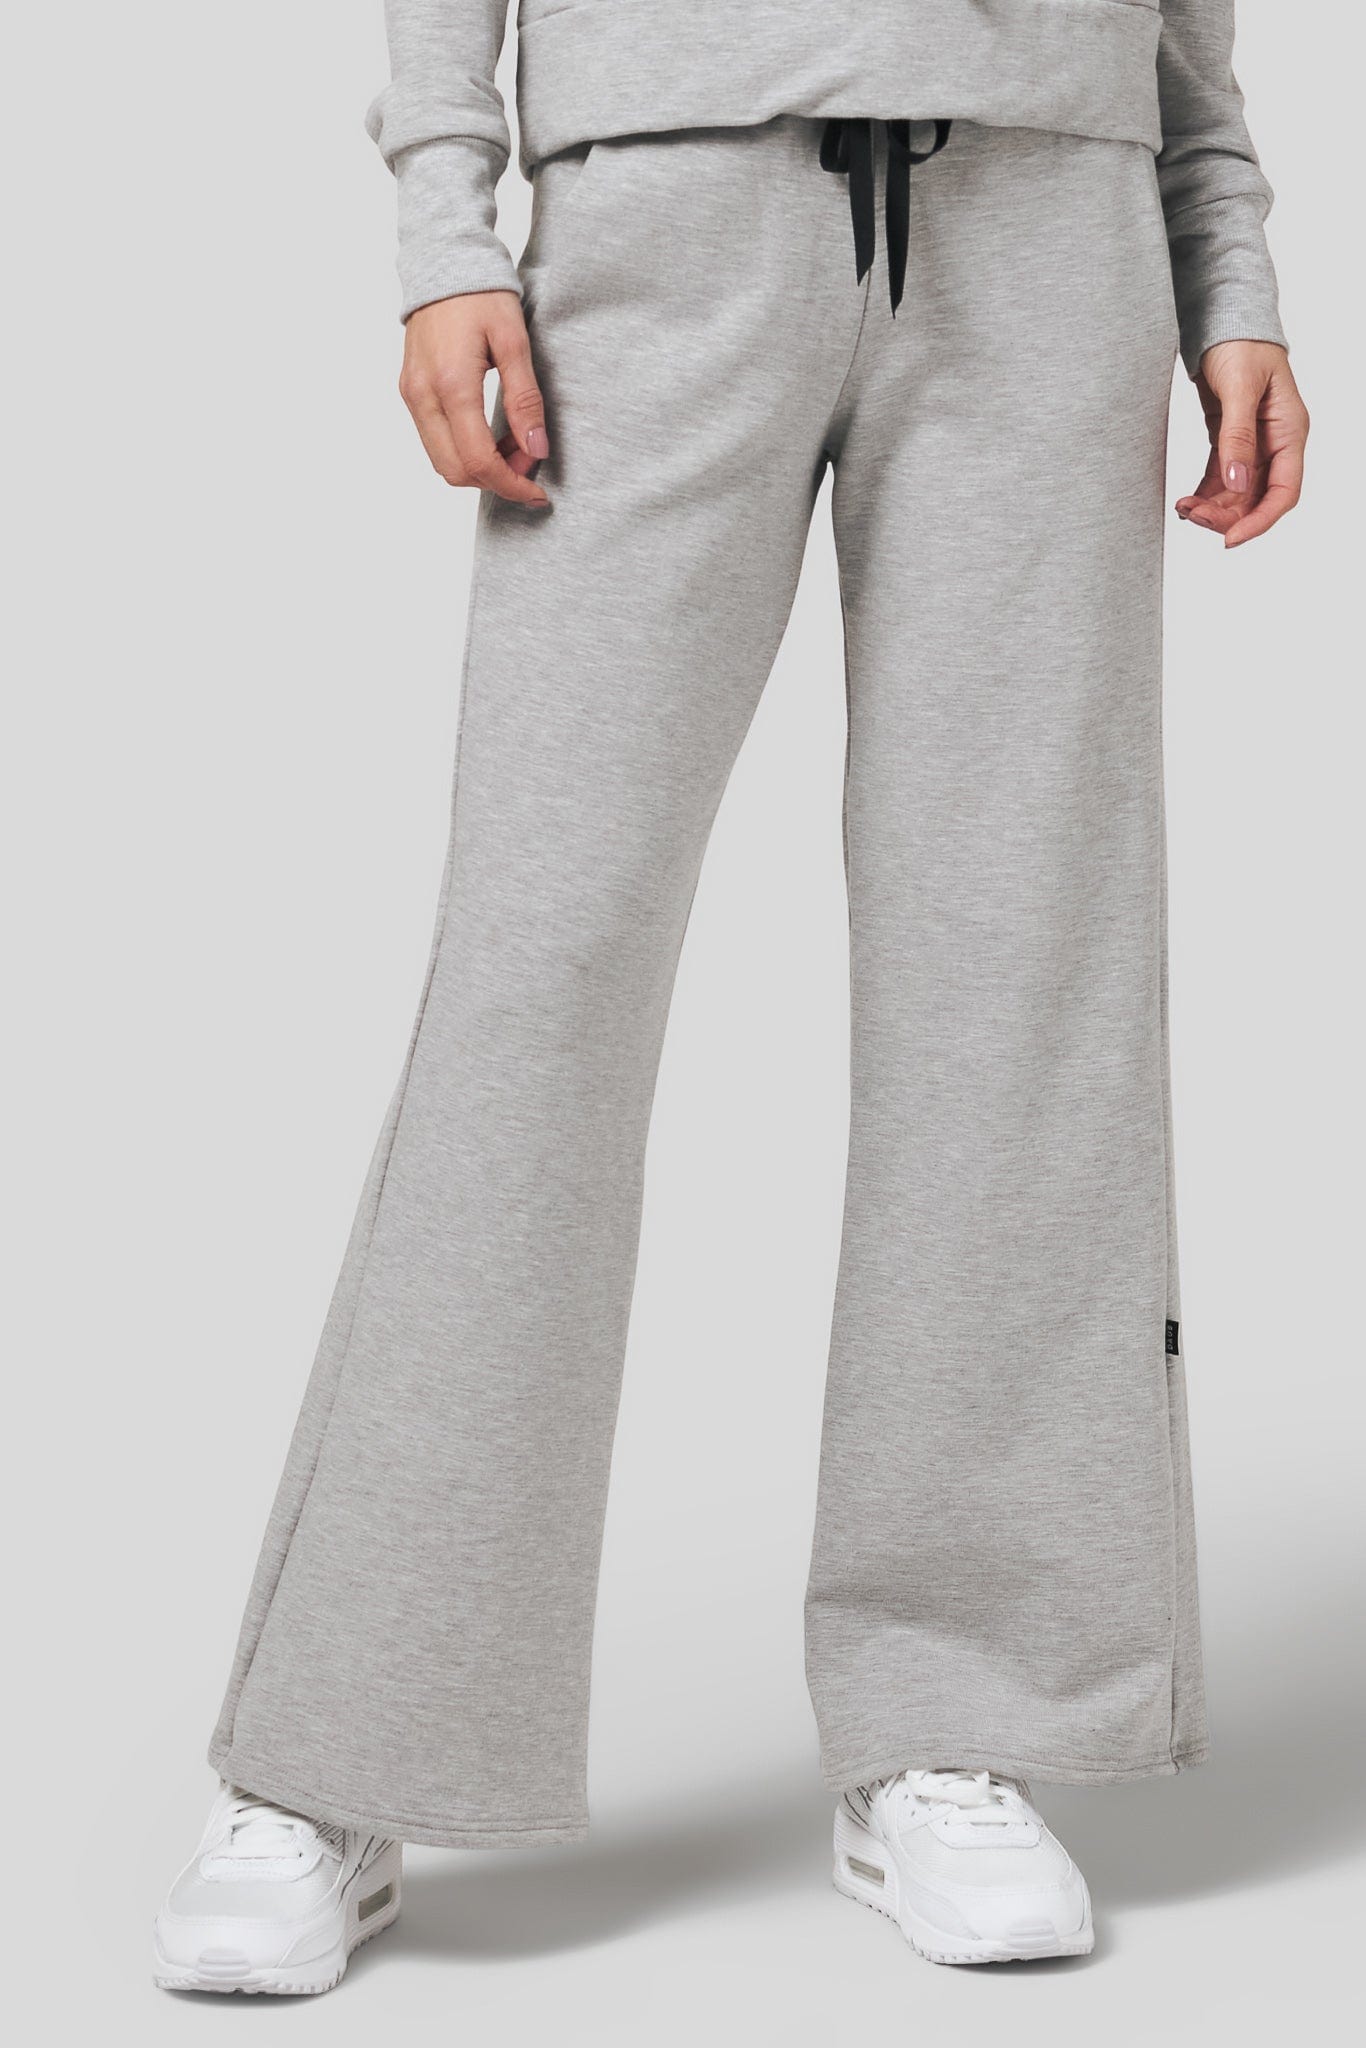 Women wearing a wide leg sweatpants in light heather grey